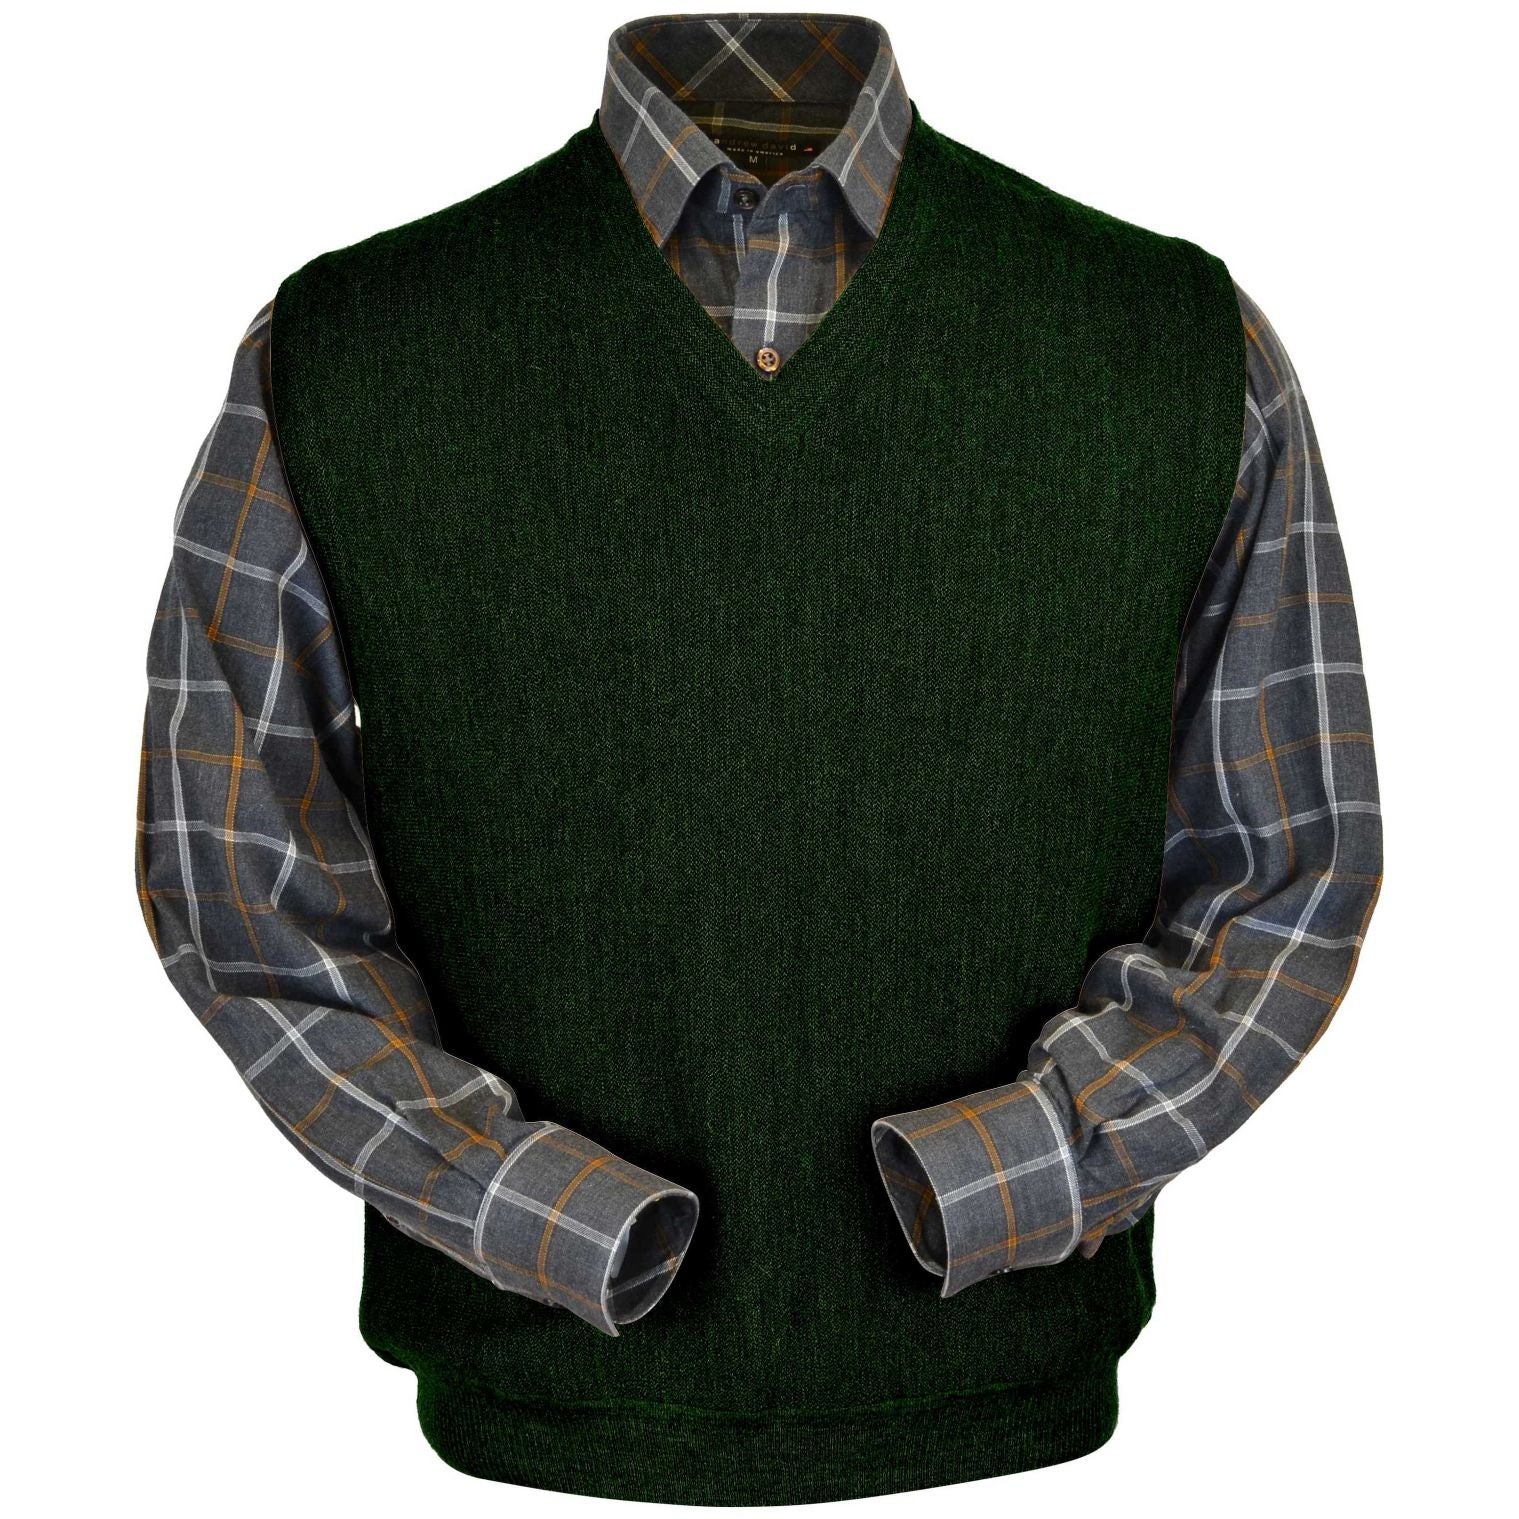 Baby Alpaca 'Links Stitch' V-Neck Sweater Vest in Dark Green Heather by Peru Unlimited